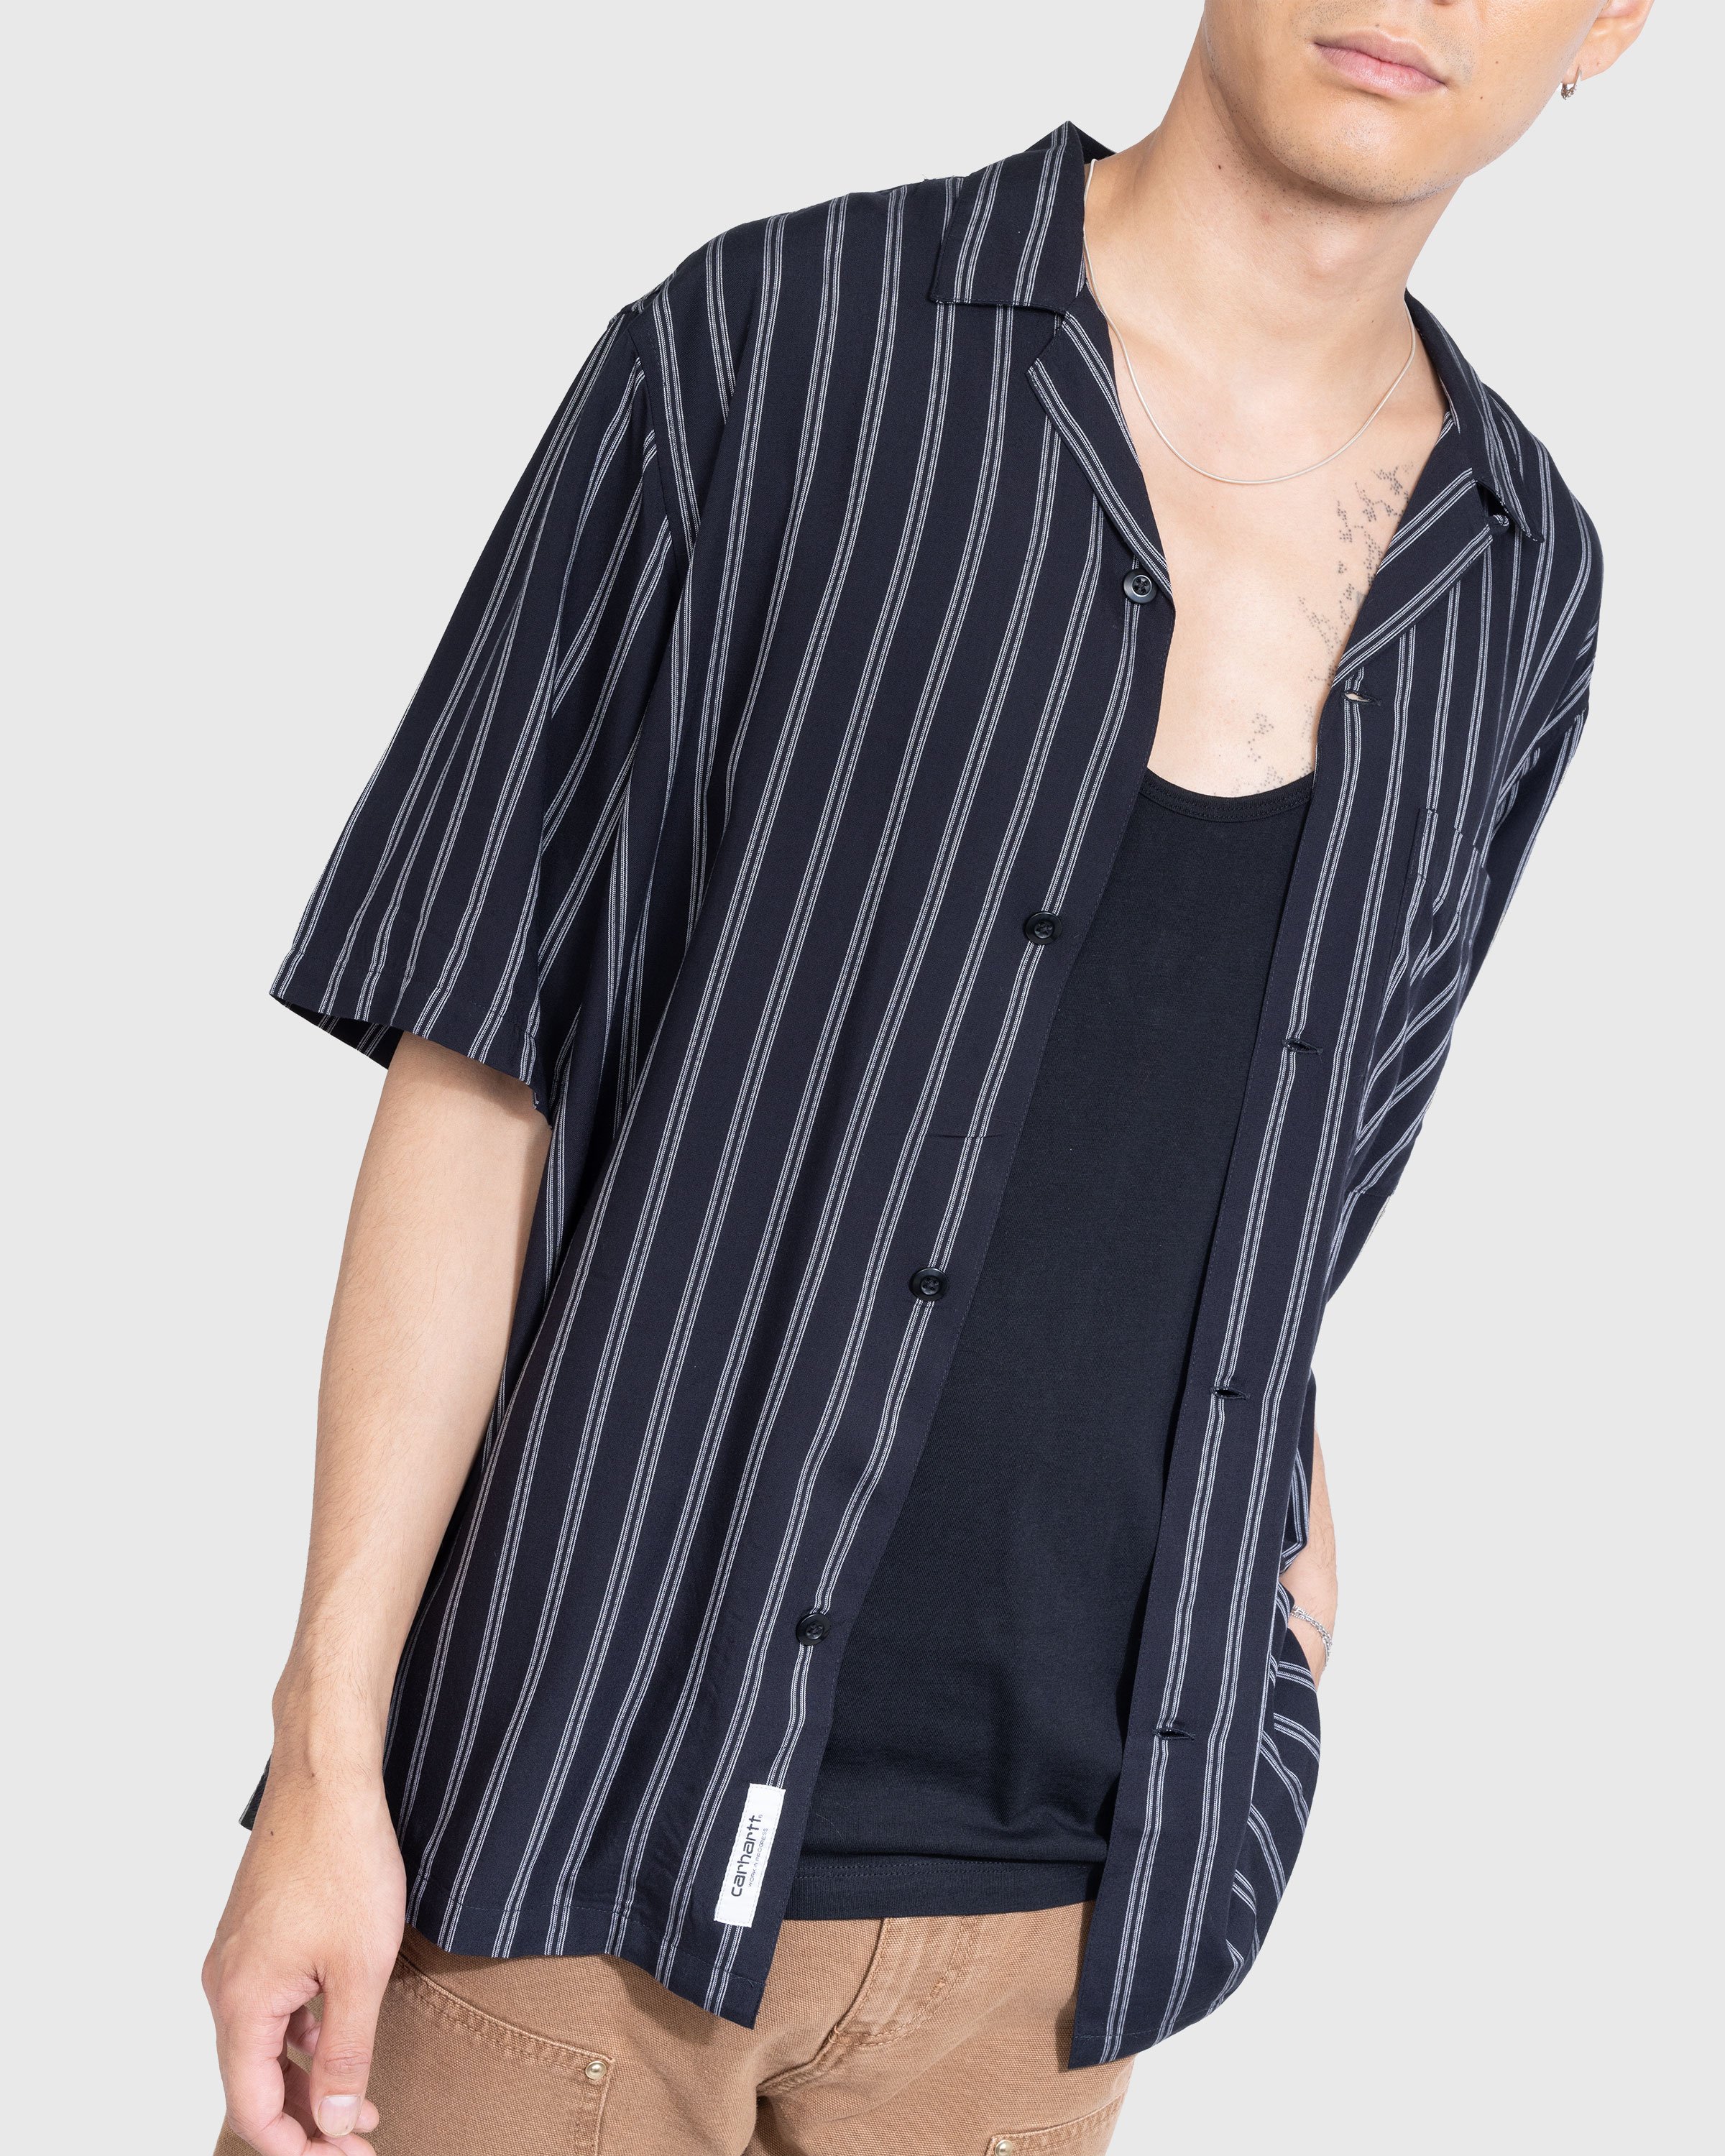 Carhartt WIP - Reyes Stripe Shirt Black - Clothing - Black - Image 3